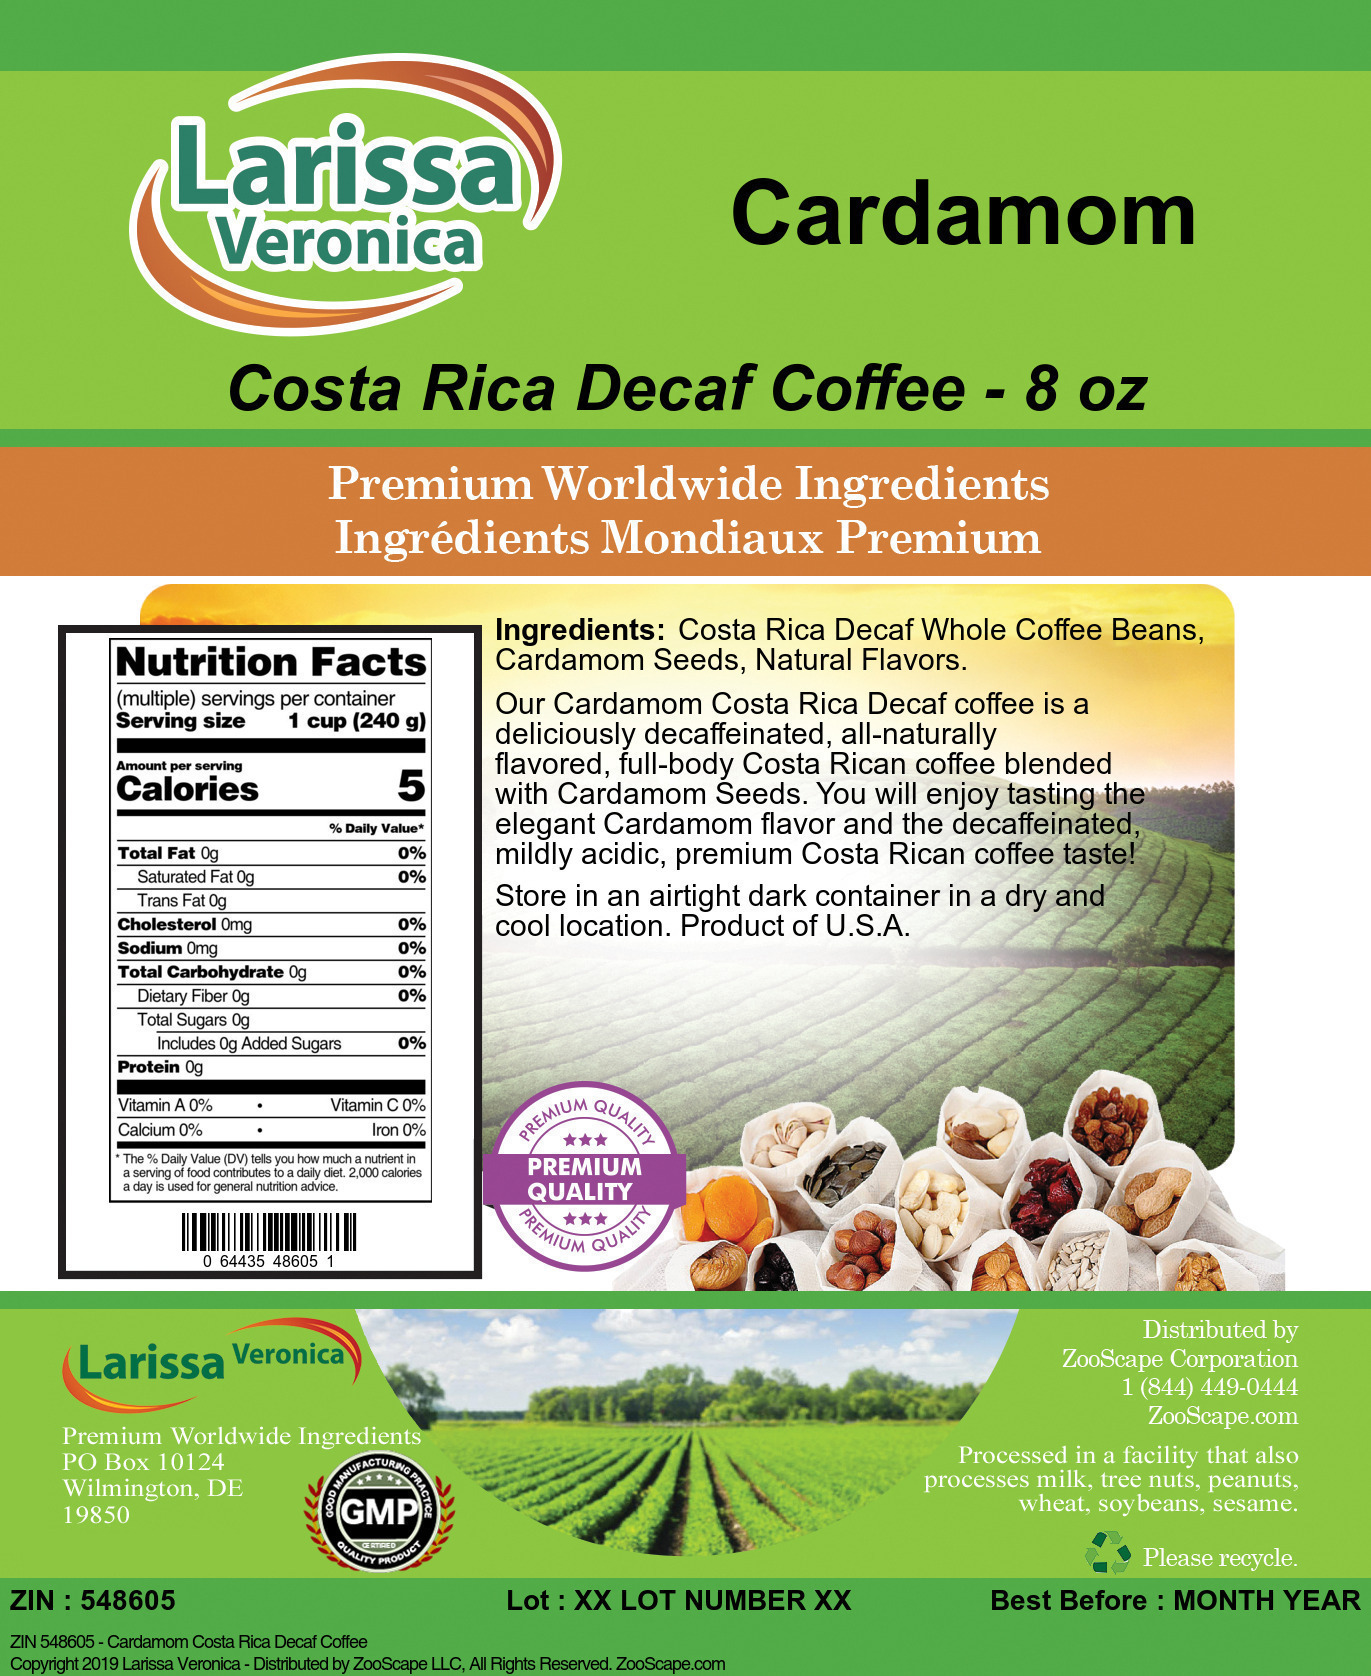 Cardamom Costa Rica Decaf Coffee - Label